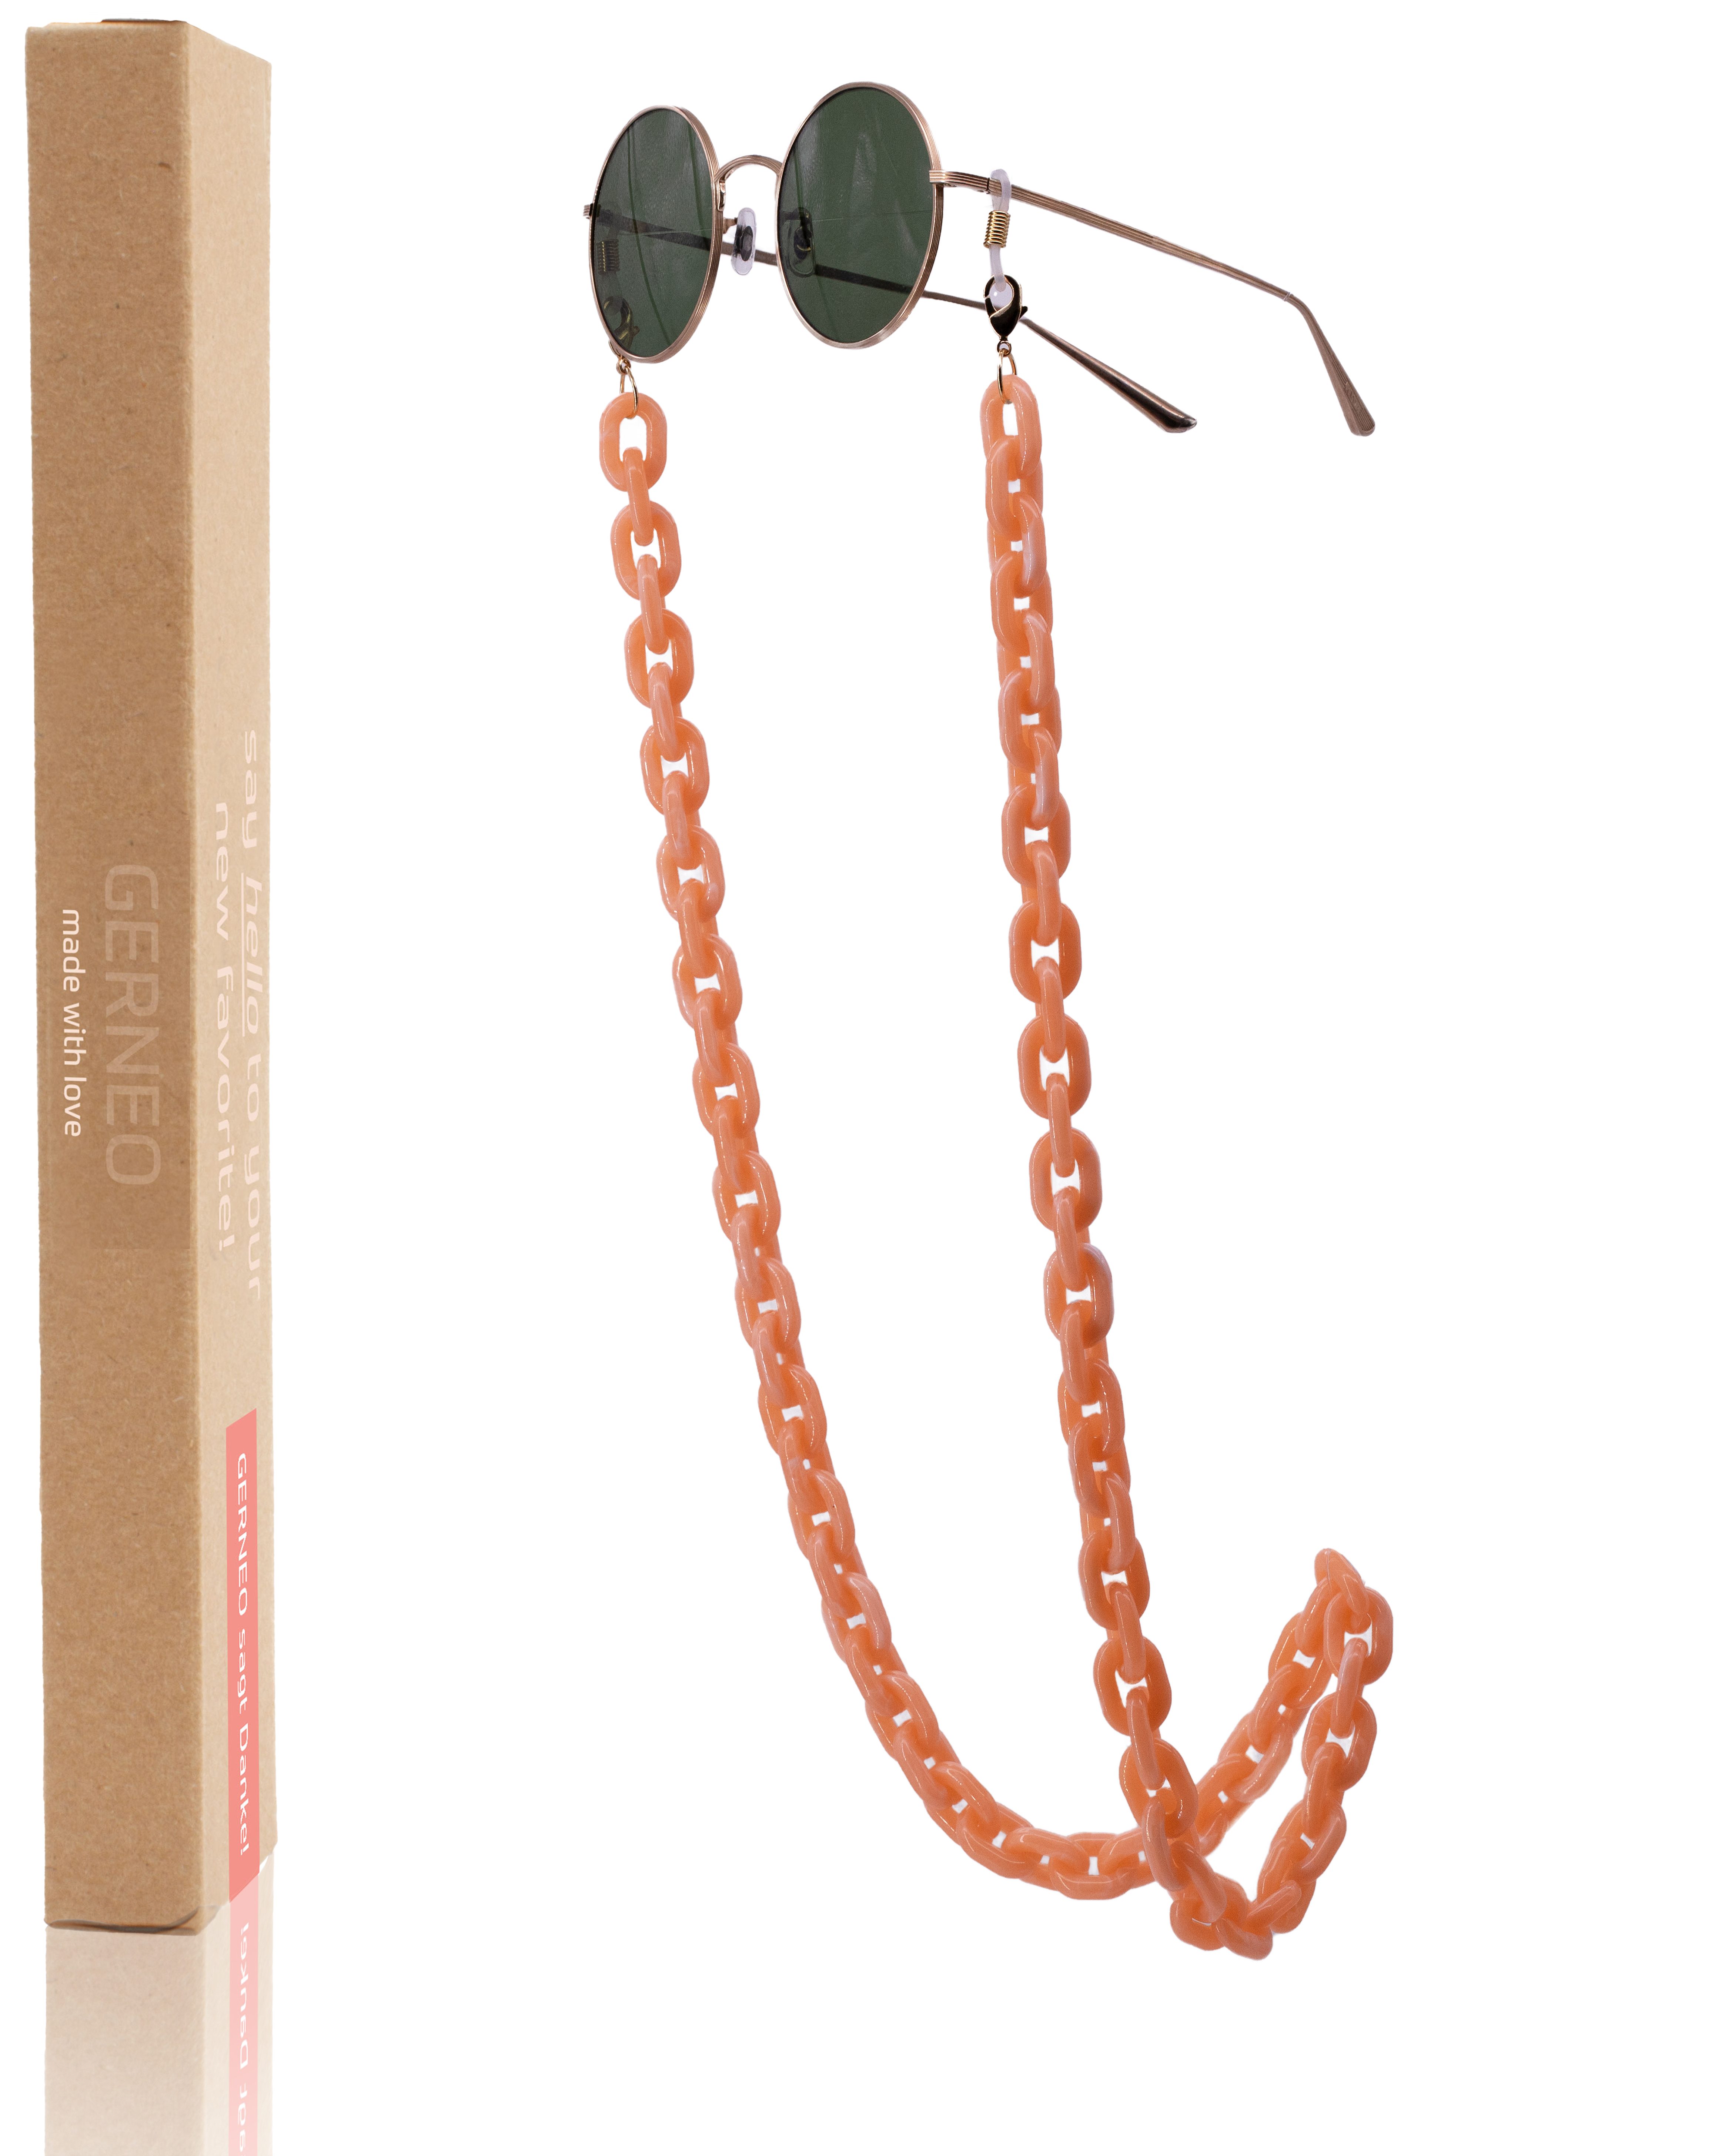 Brillen & ERNEO® korrosionsbeständig - Kette aus Brillenkette Puglia Brillenband GERNEO einzigartig Rosé-Beige Acryl, hochwertige Gold – Maskenhalter Brillenkette